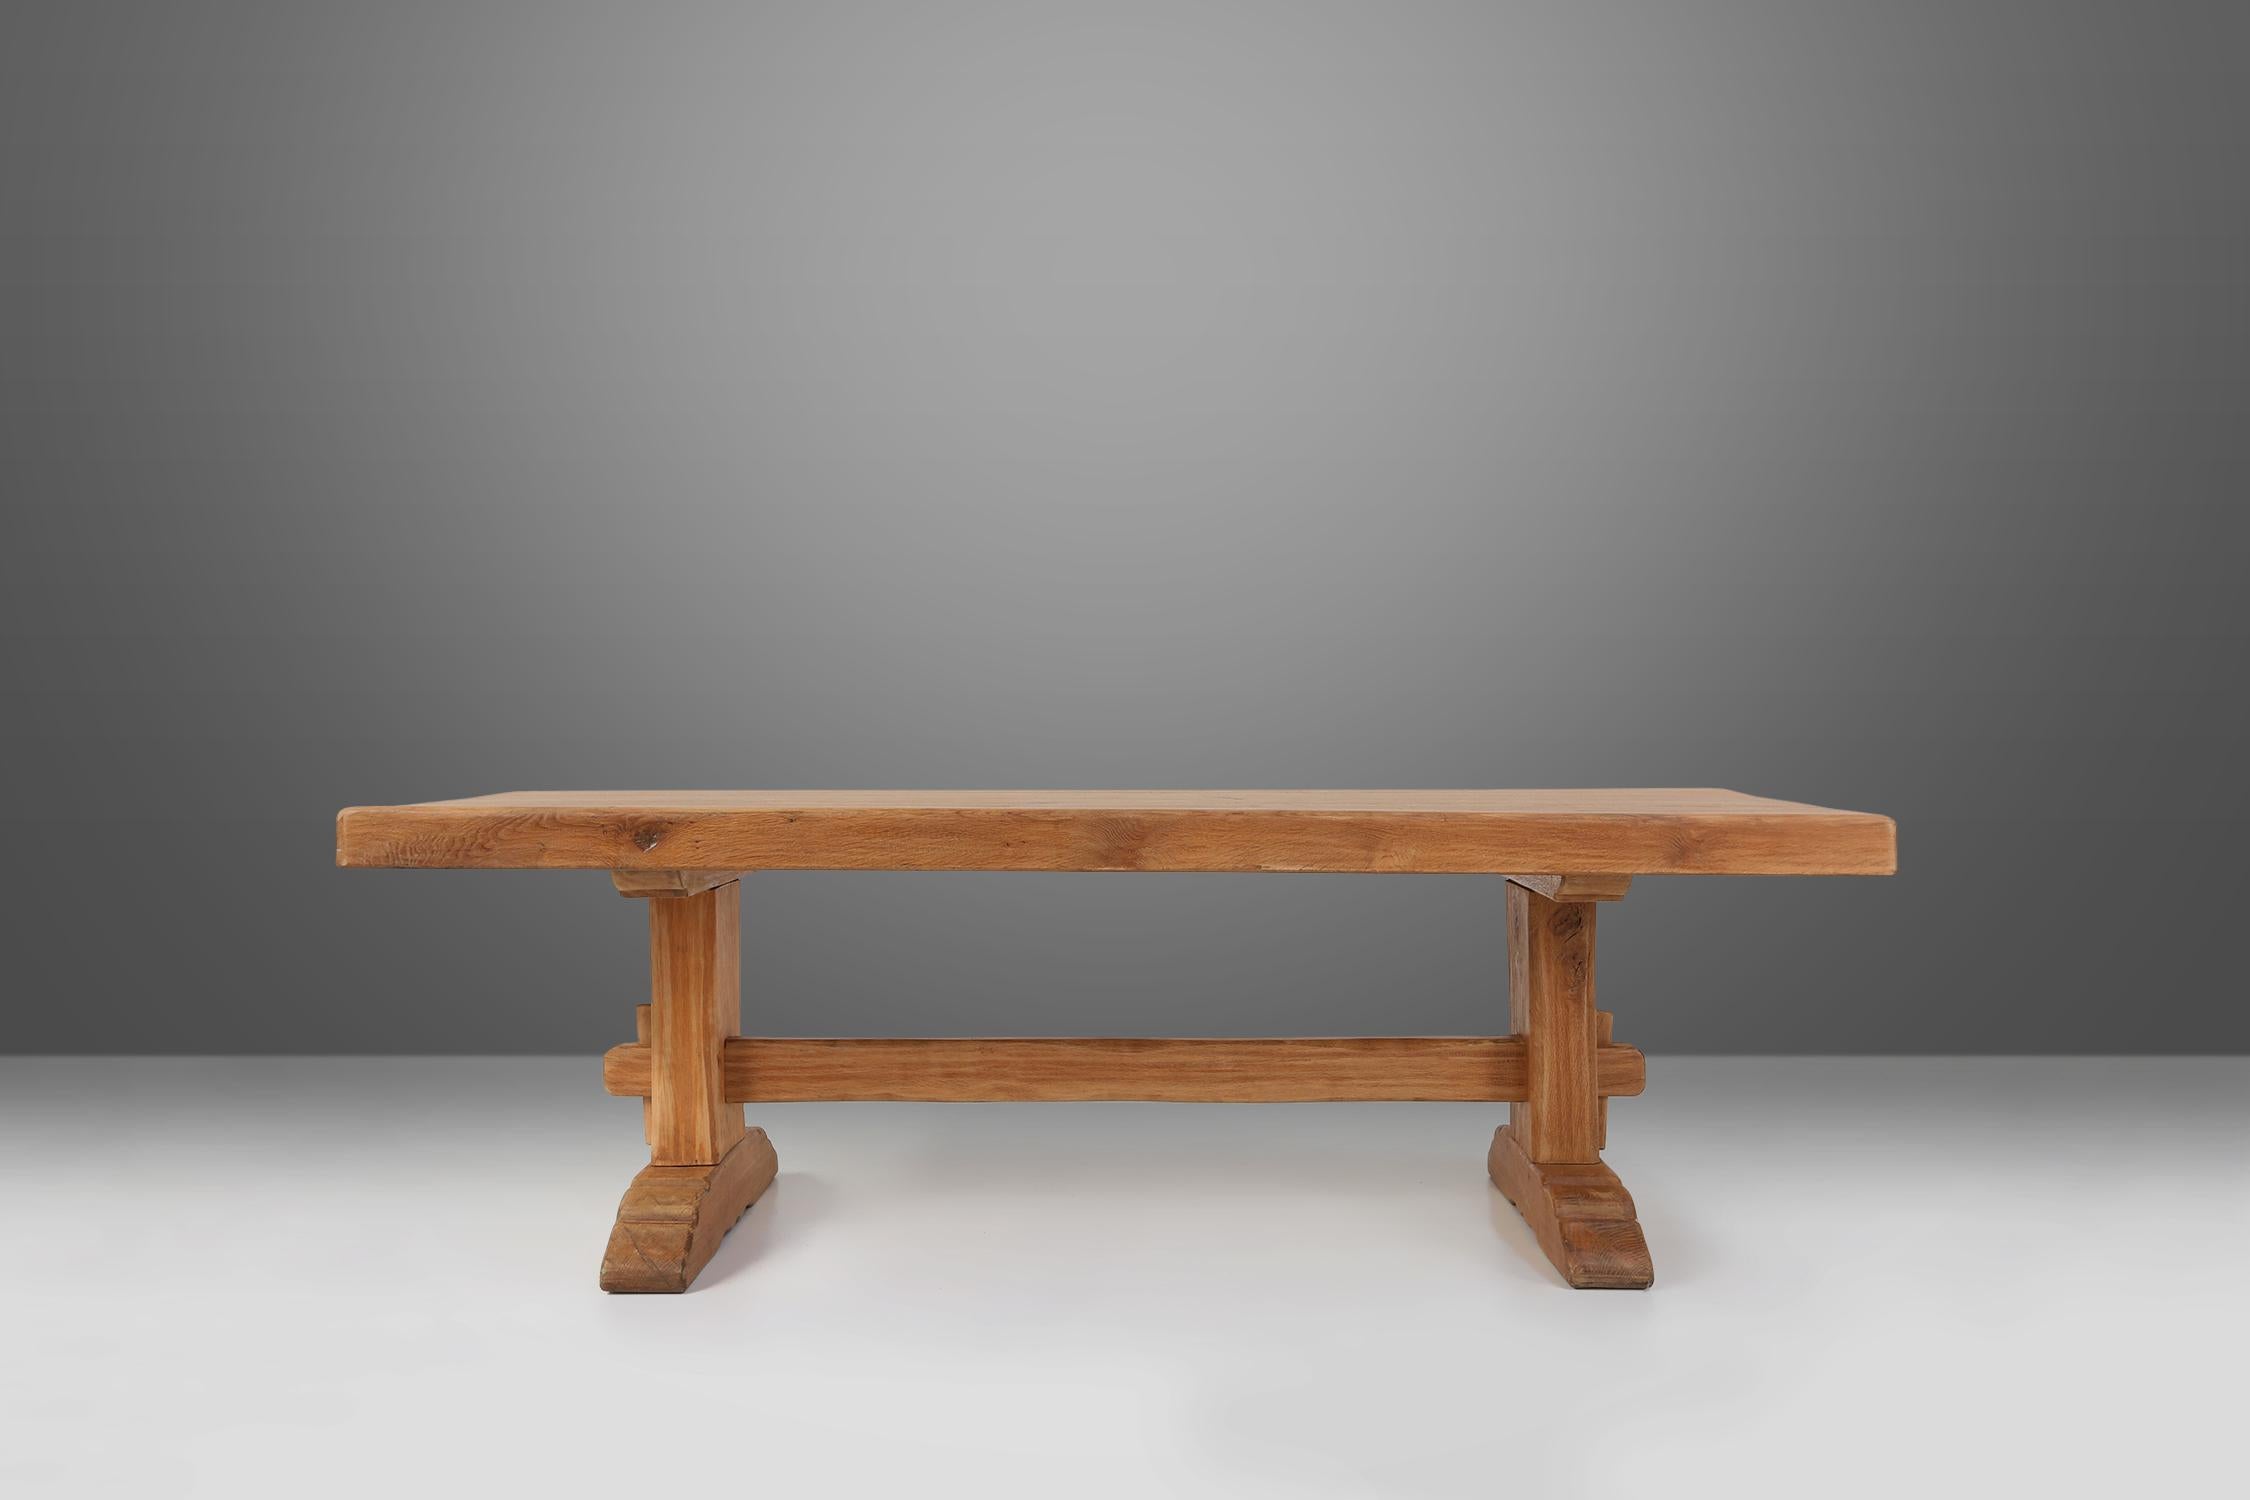 Cette table intemporelle en bois rustique, allie sans effort l'esthétique vintage à la fonctionnalité. Fabriqué en bois de haute qualité, cet ensemble de table met en valeur l'élégance et la durabilité de l'artisanat français. Son design rustique,